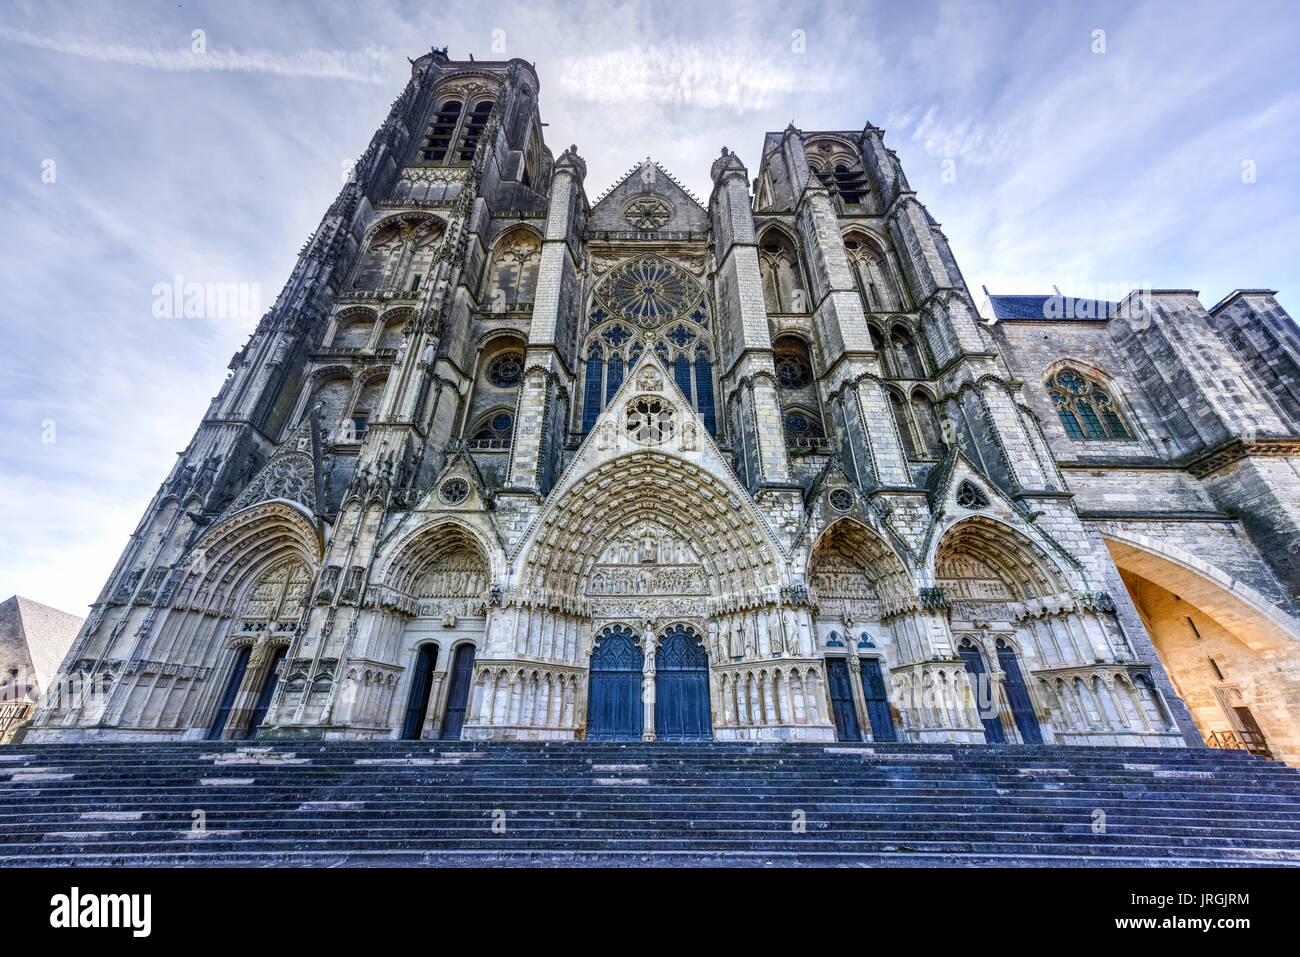 La cattedrale di Bourges, la Chiesa Cattolica Romana si trova a Bourges, Francia. È dedicata a Santo Stefano ed è la sede dell'Arcivescovo di Bourges. Foto Stock